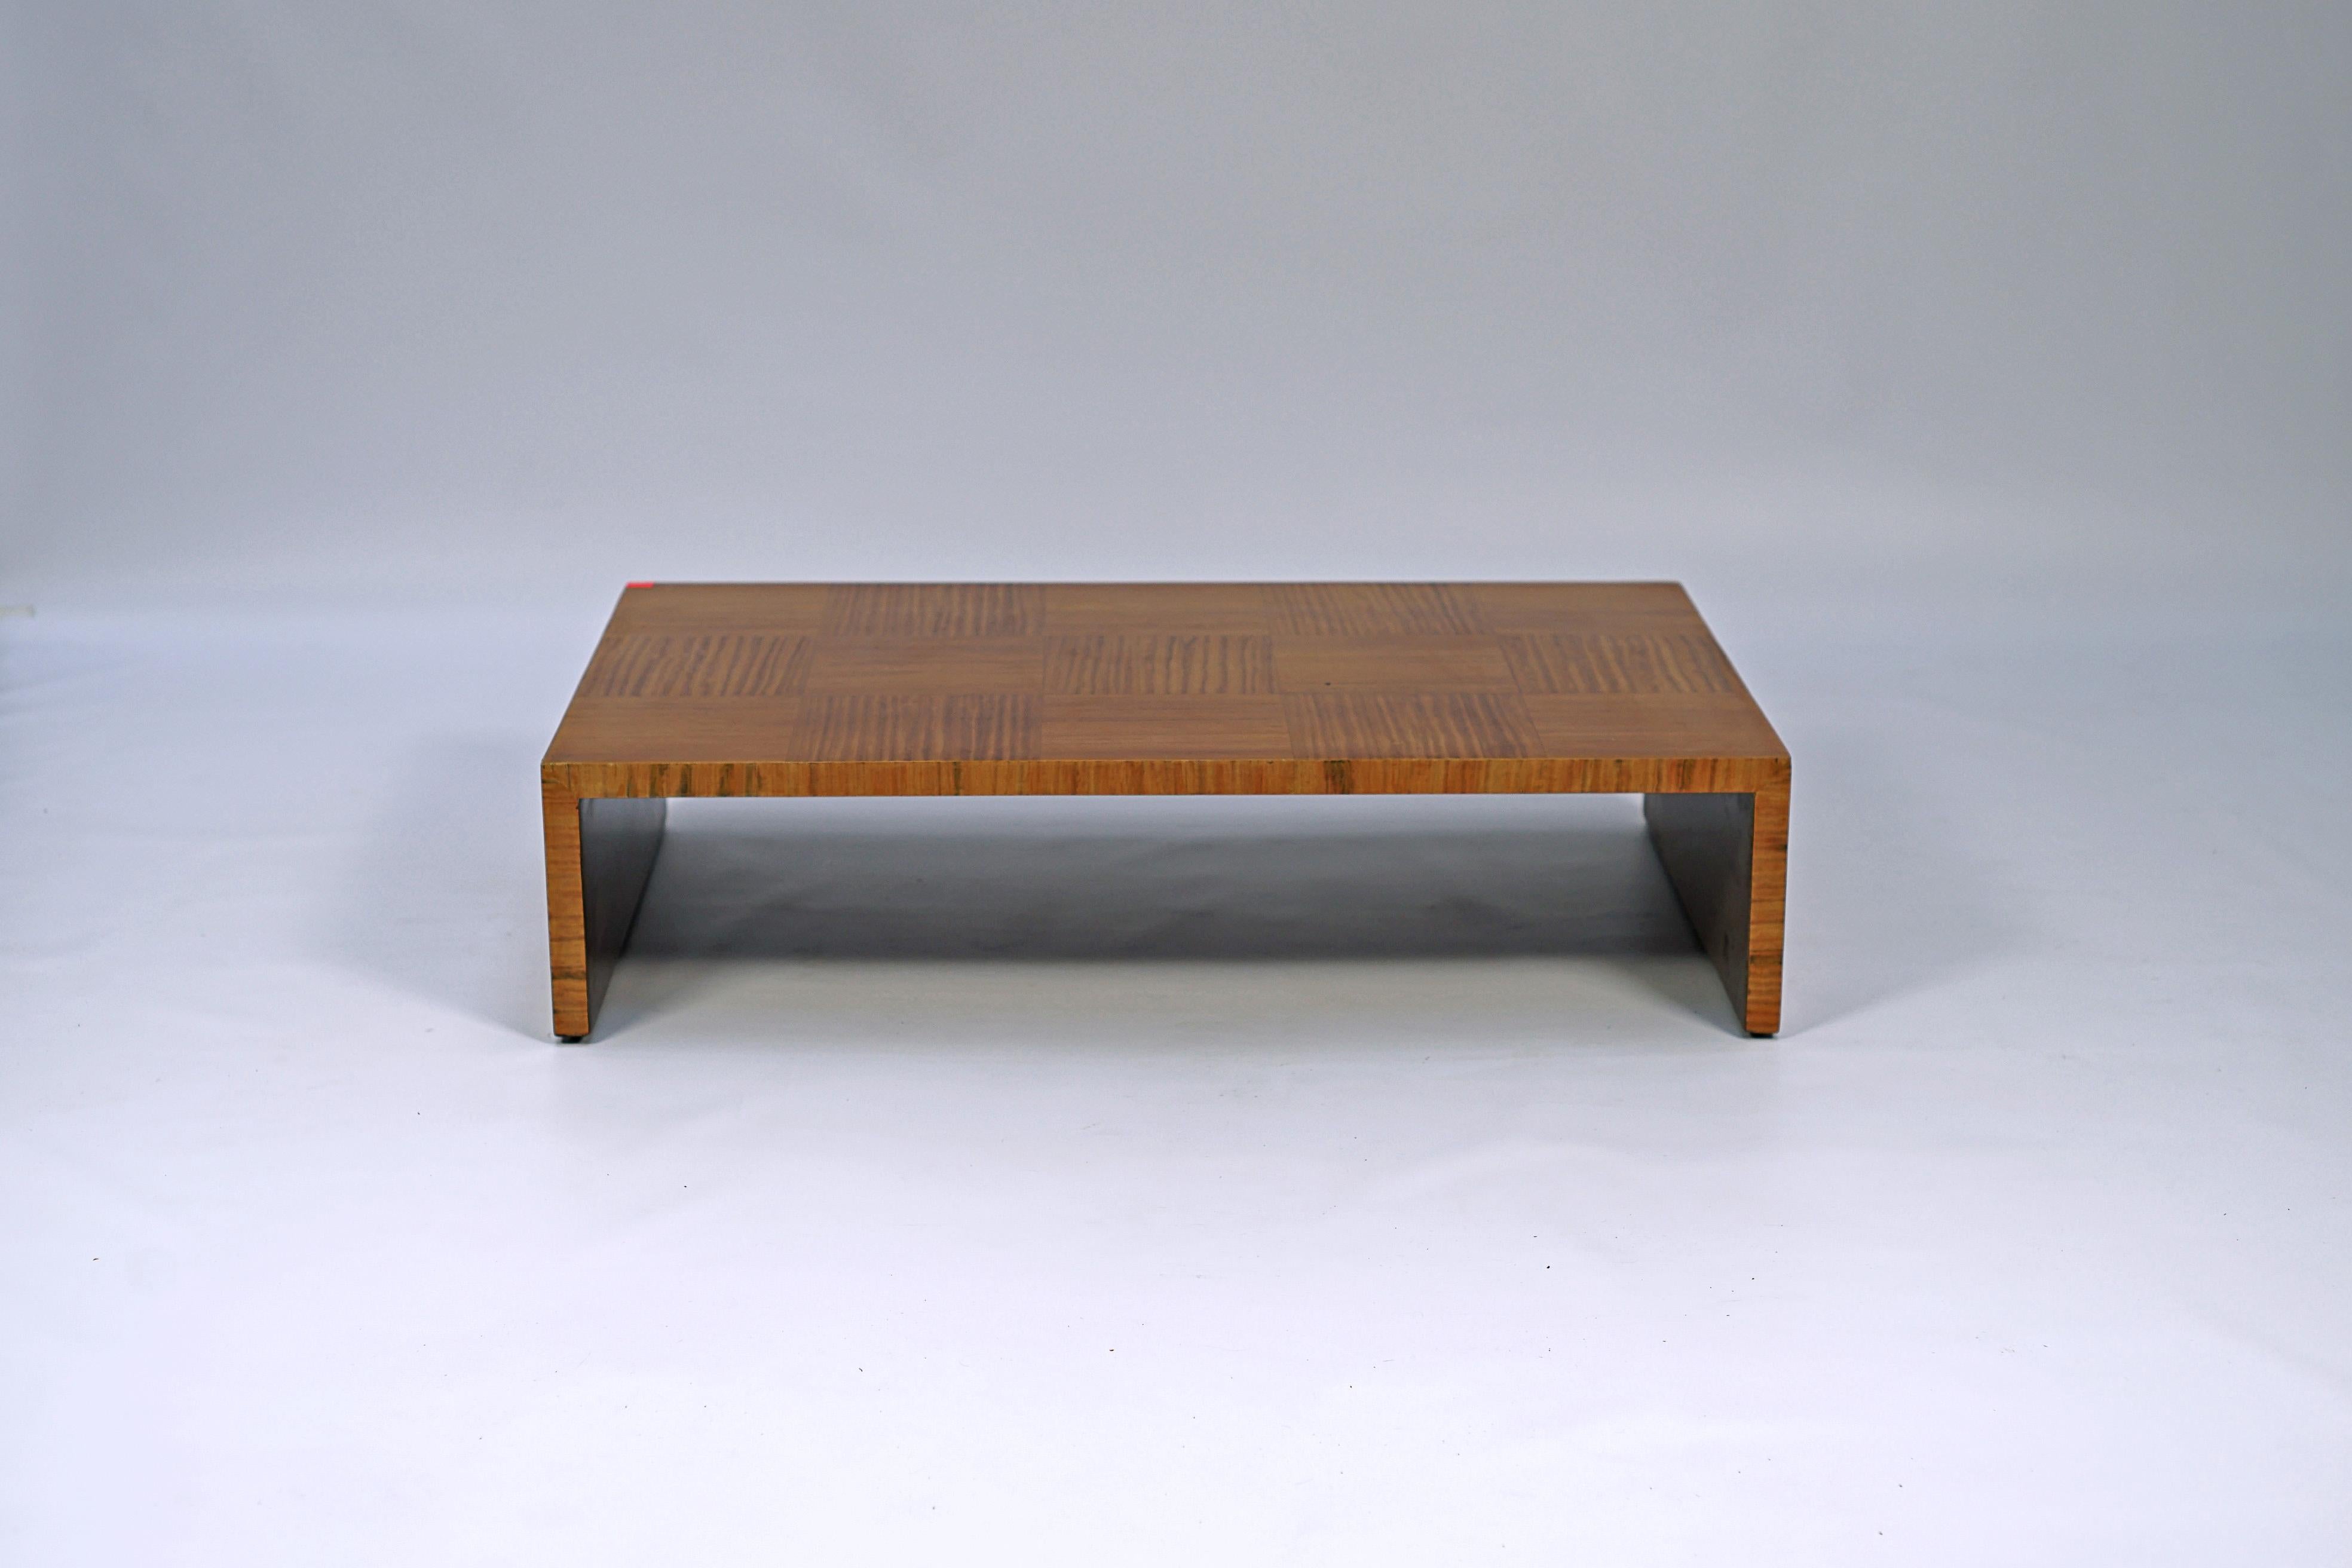 Paire de tables basses Art Déco conçues par Paul Follot (1877-1941). L'ensemble de la table est recouvert de placage de bois de rose.

France, CIRCA 1930.